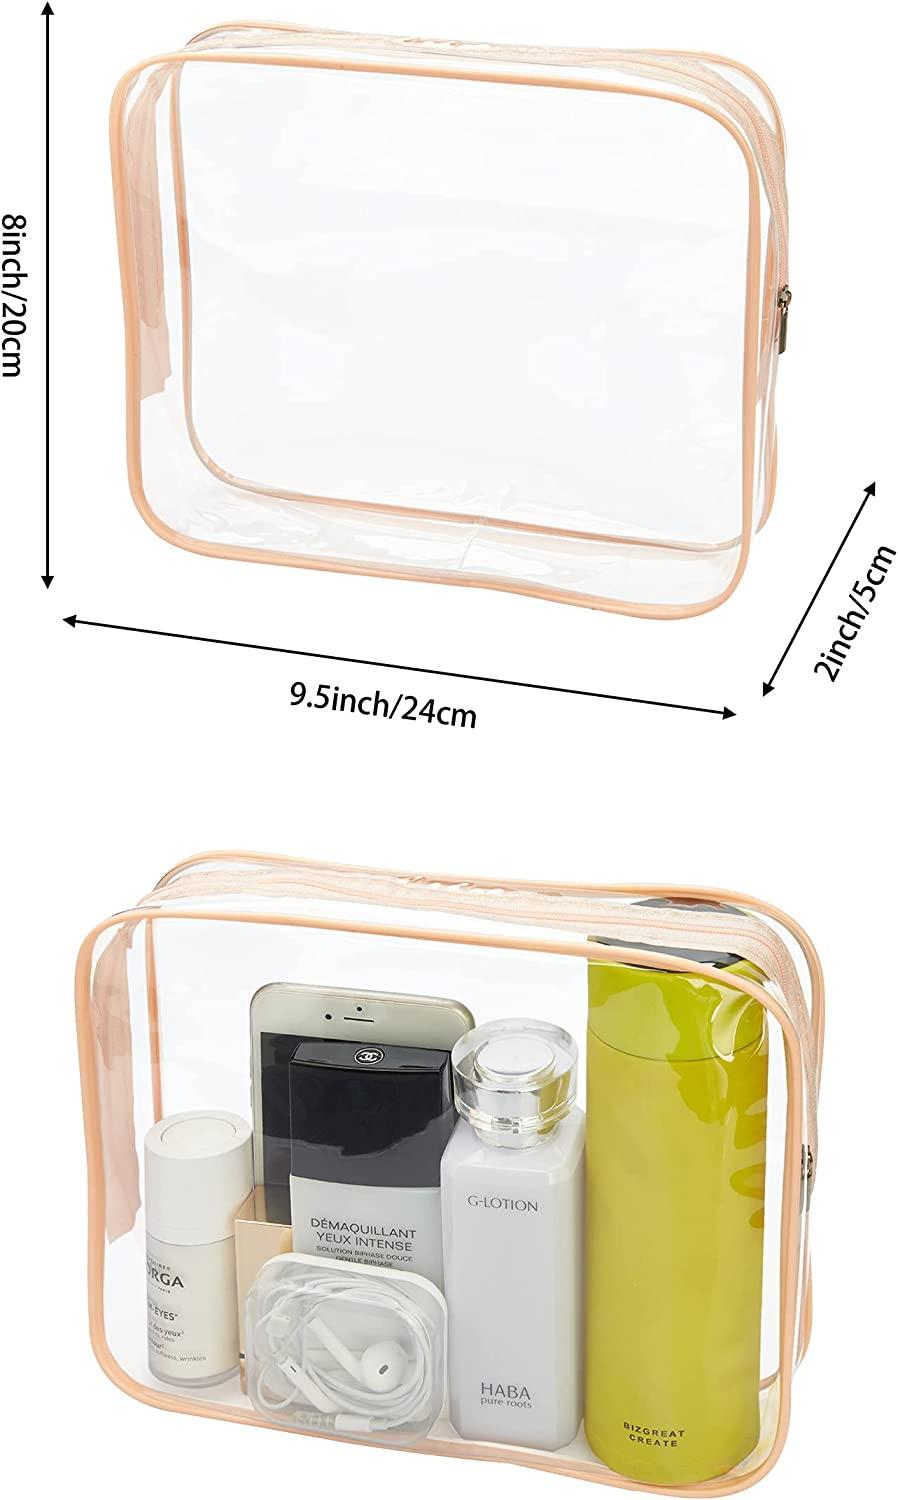 A Tu Z PVC Cosmetic Kit Bag, Bag Size: A Tu Z